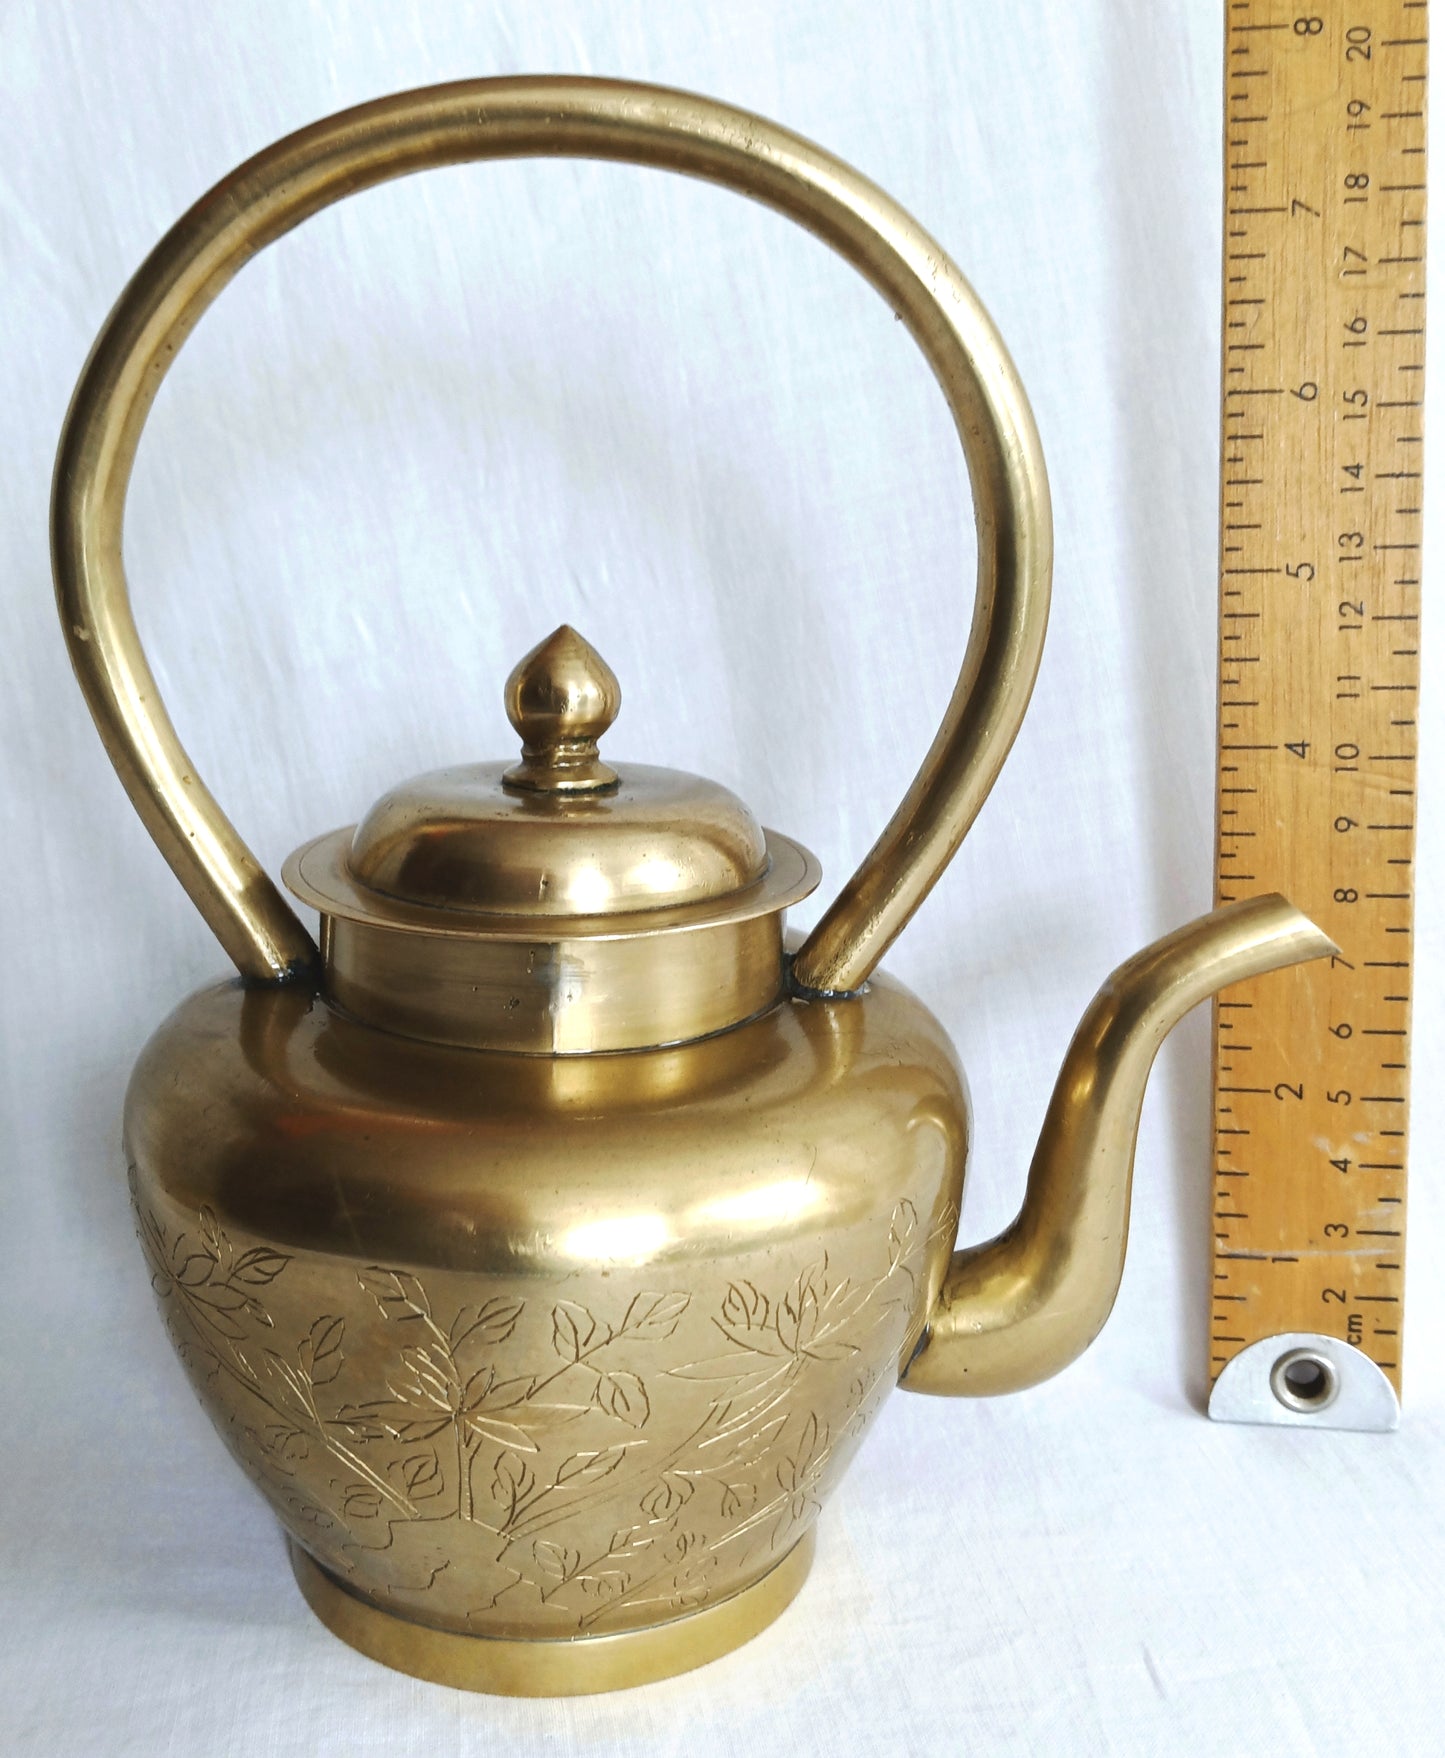 Vintage Solid Brass Small Teapot Lidded Kettle with Handle Etched Floral Design Gooseneck Spout Pot Farmhouse Cottage Kitchen Home Decorative Retro Teapot